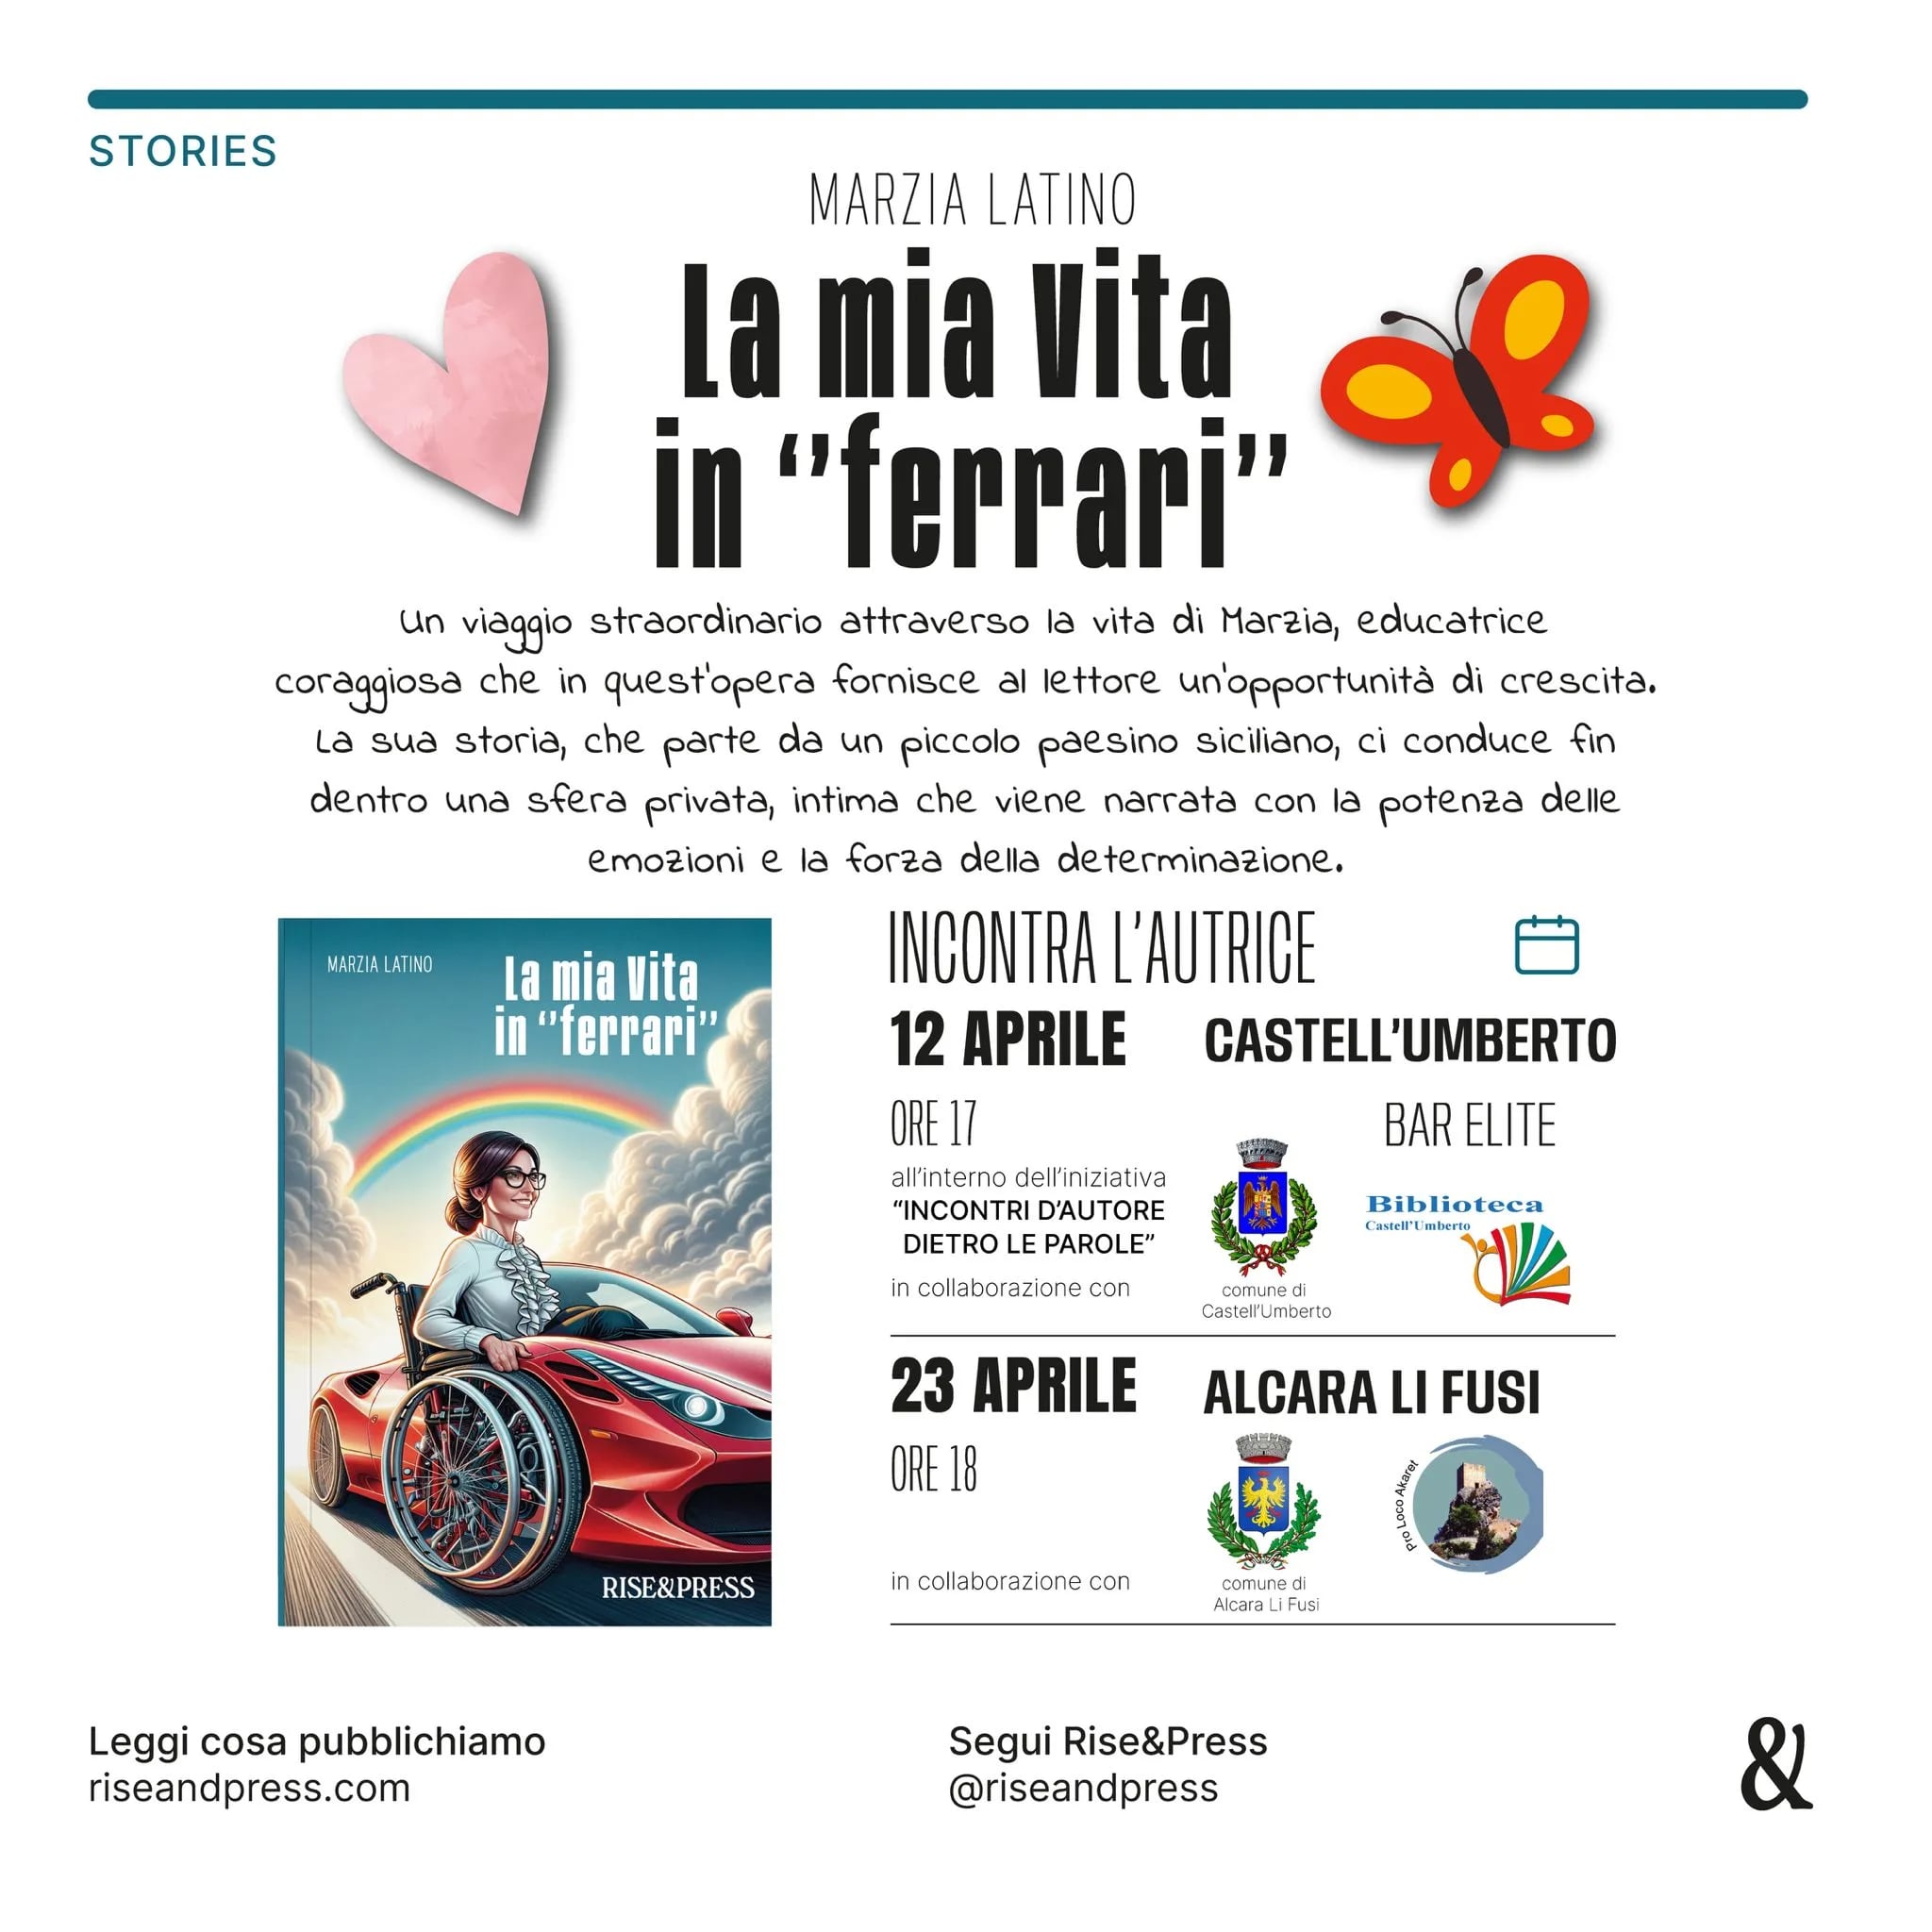 Castell’Umberto – Domani sera la presentazione del libro “La mia vita in Ferrari”